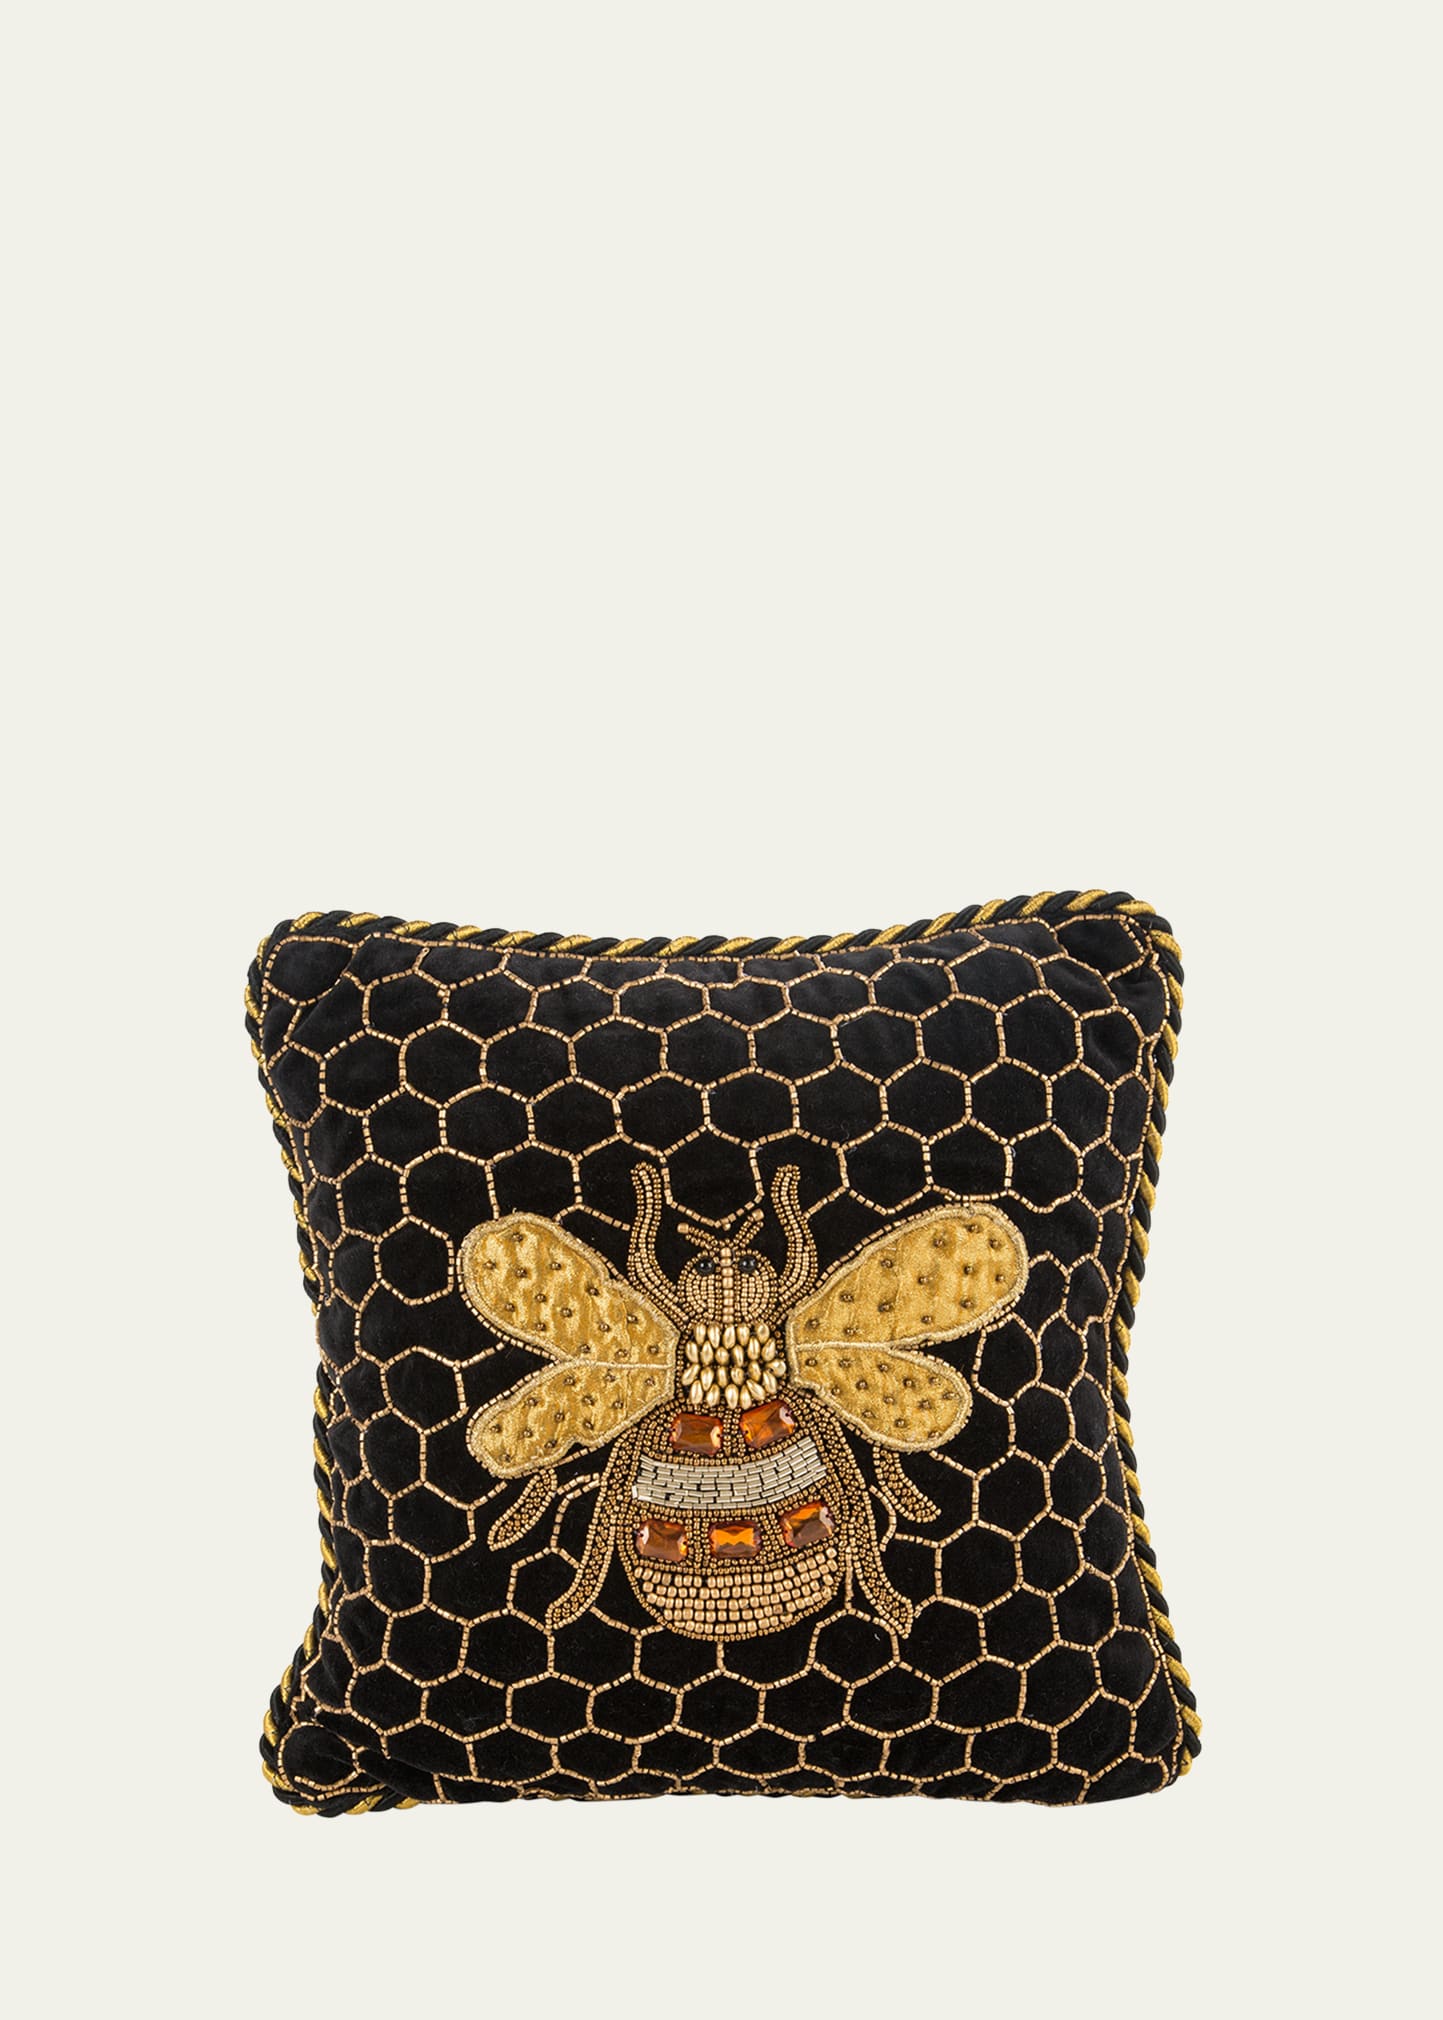 Queen Bee Pillow